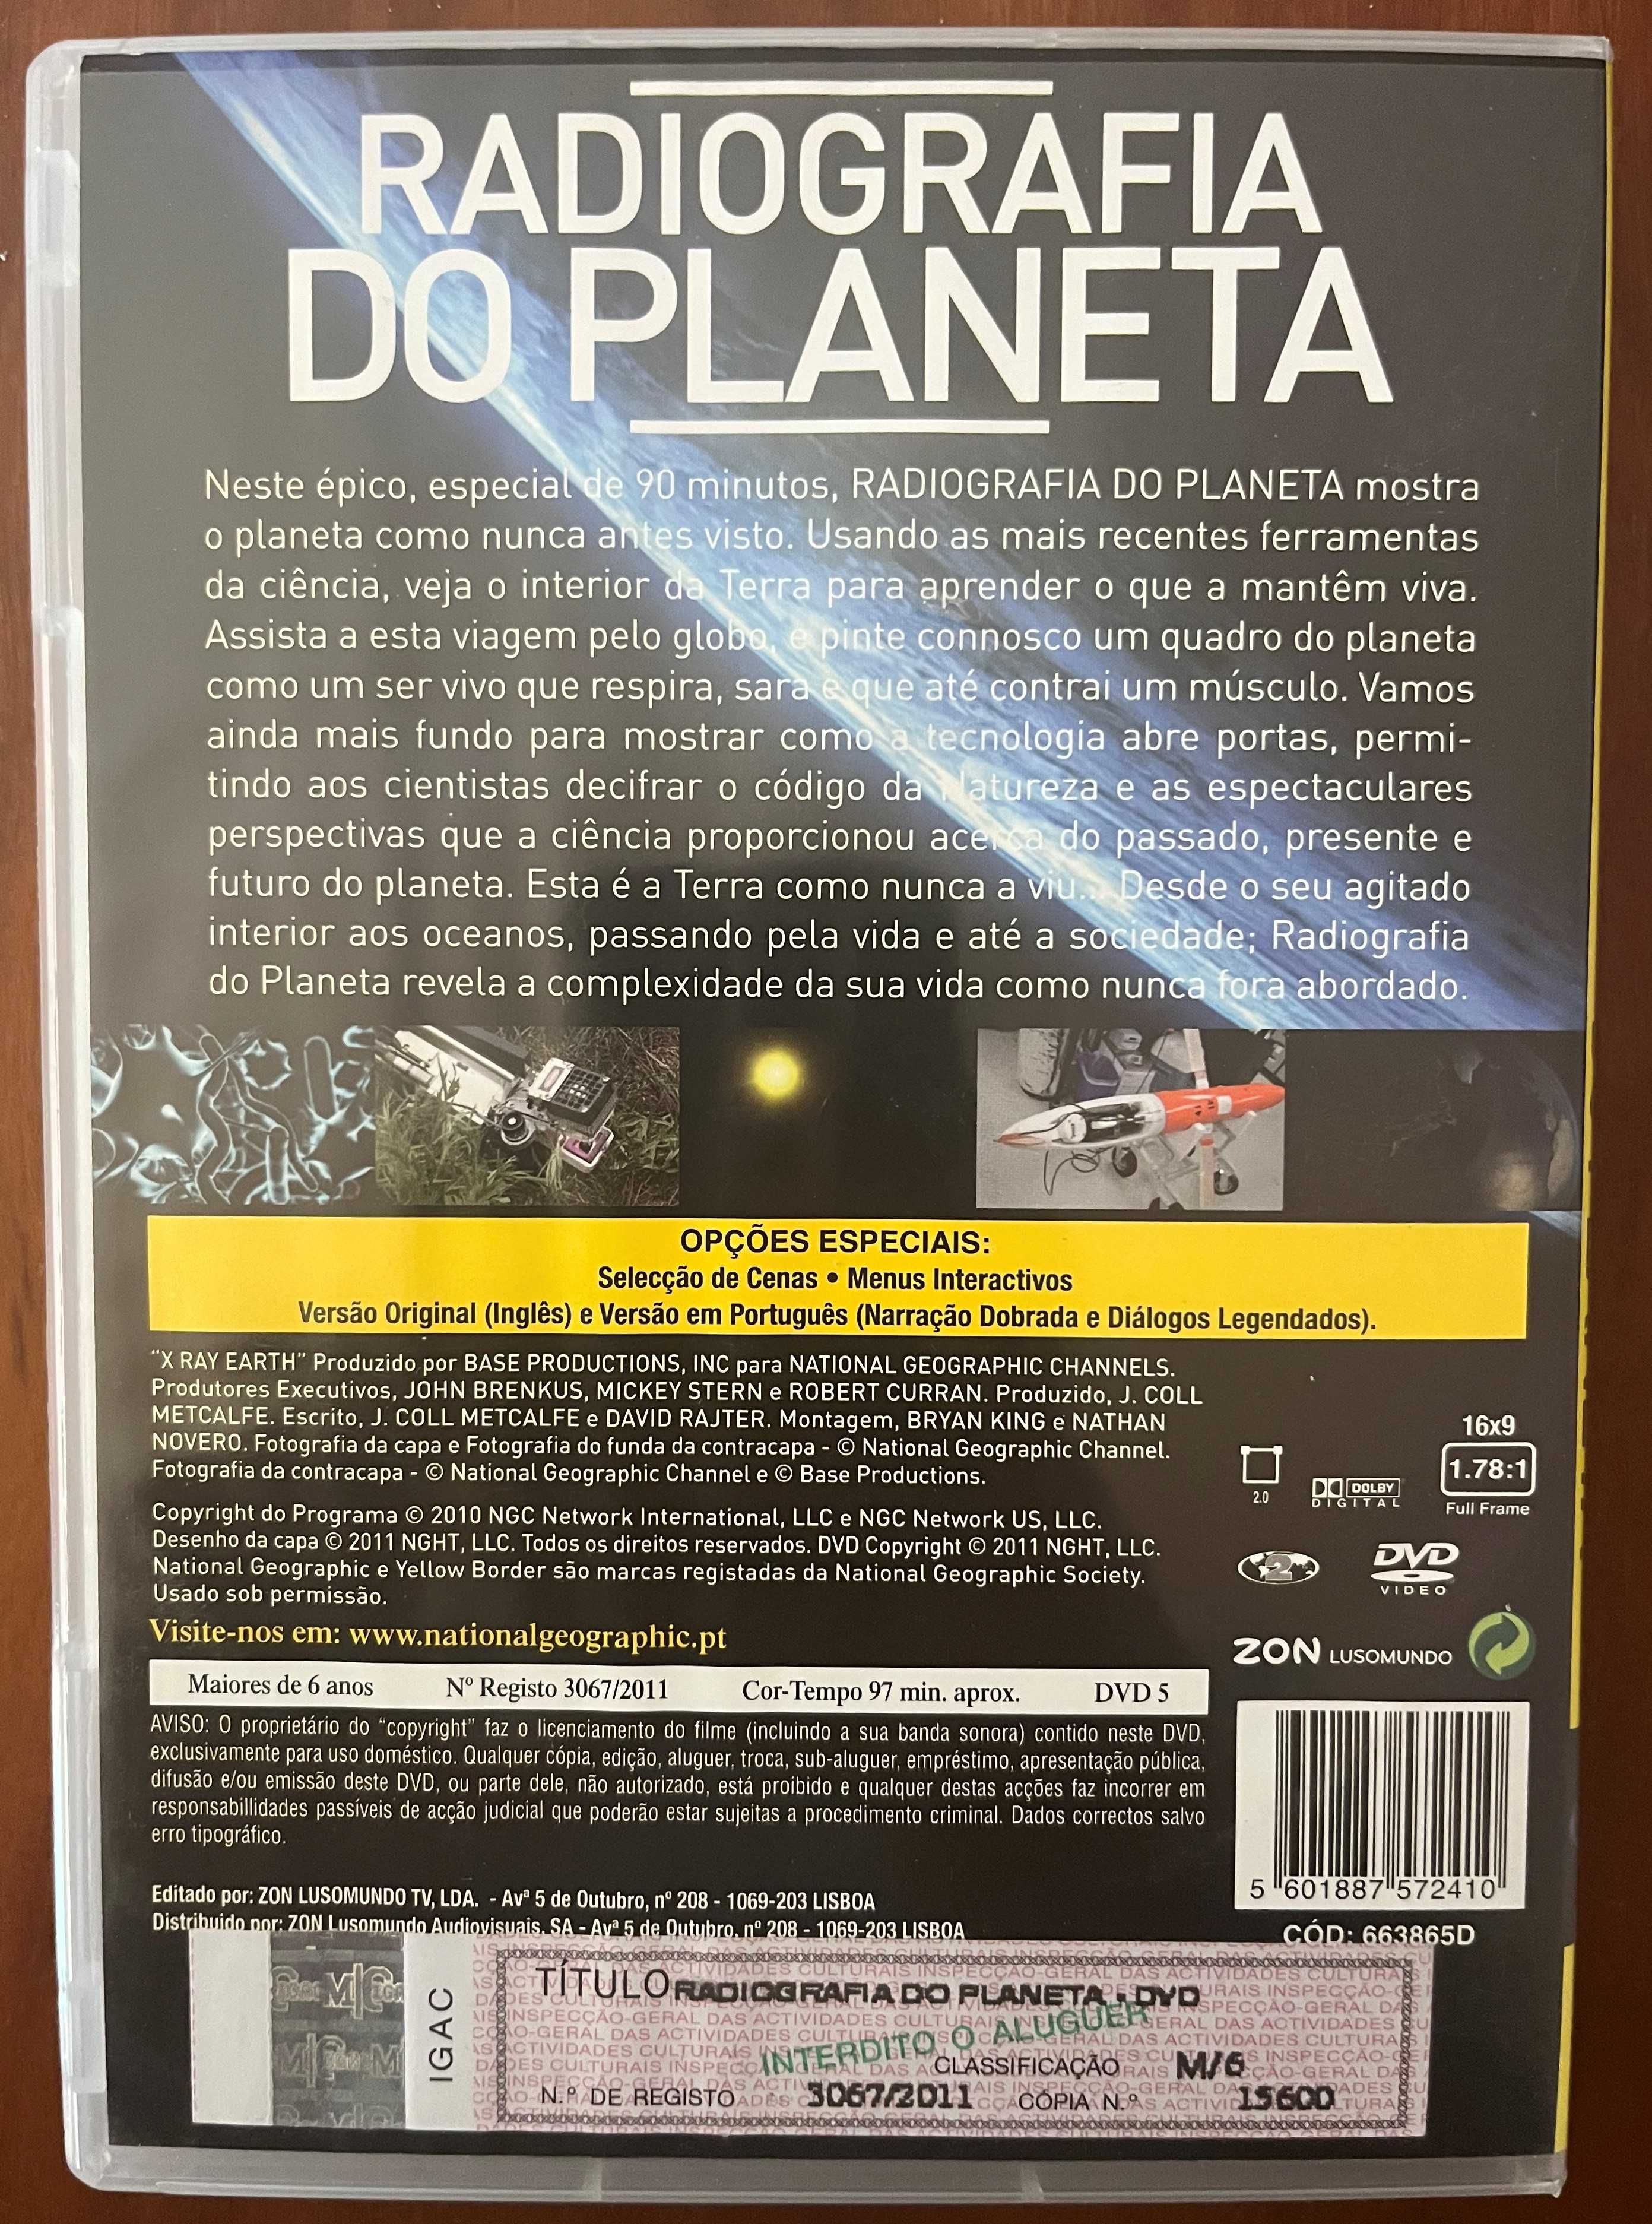 DVD "Radiografia do Planeta" de National Geographic